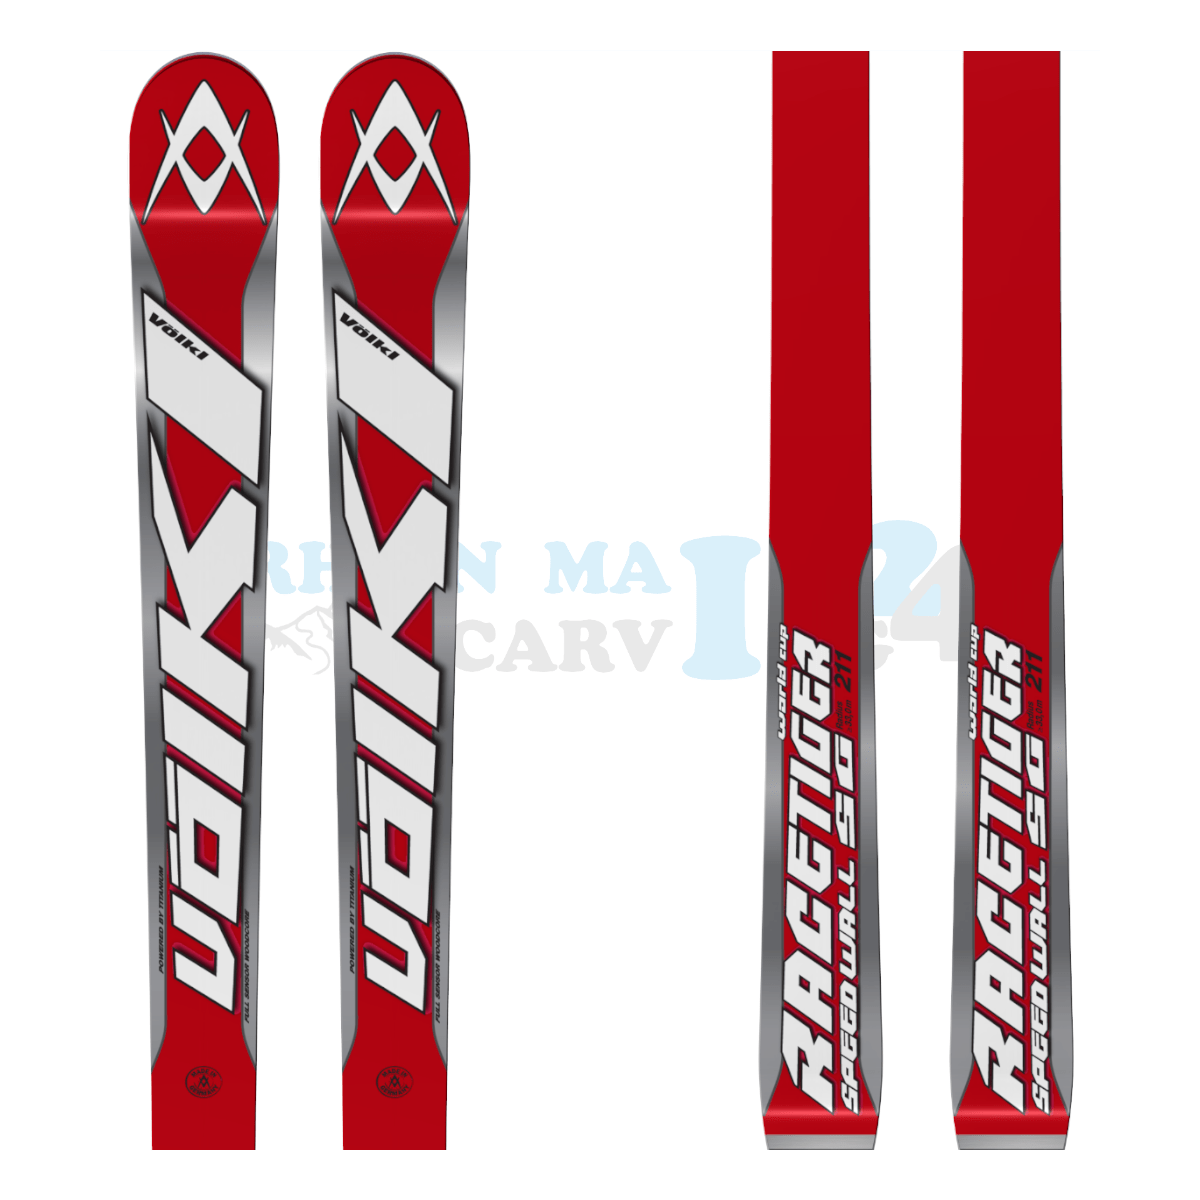 Völkl Racetiger Super-G in der Farbe rot-silber, Ansicht des oberen sowie unteren Teils des Skis